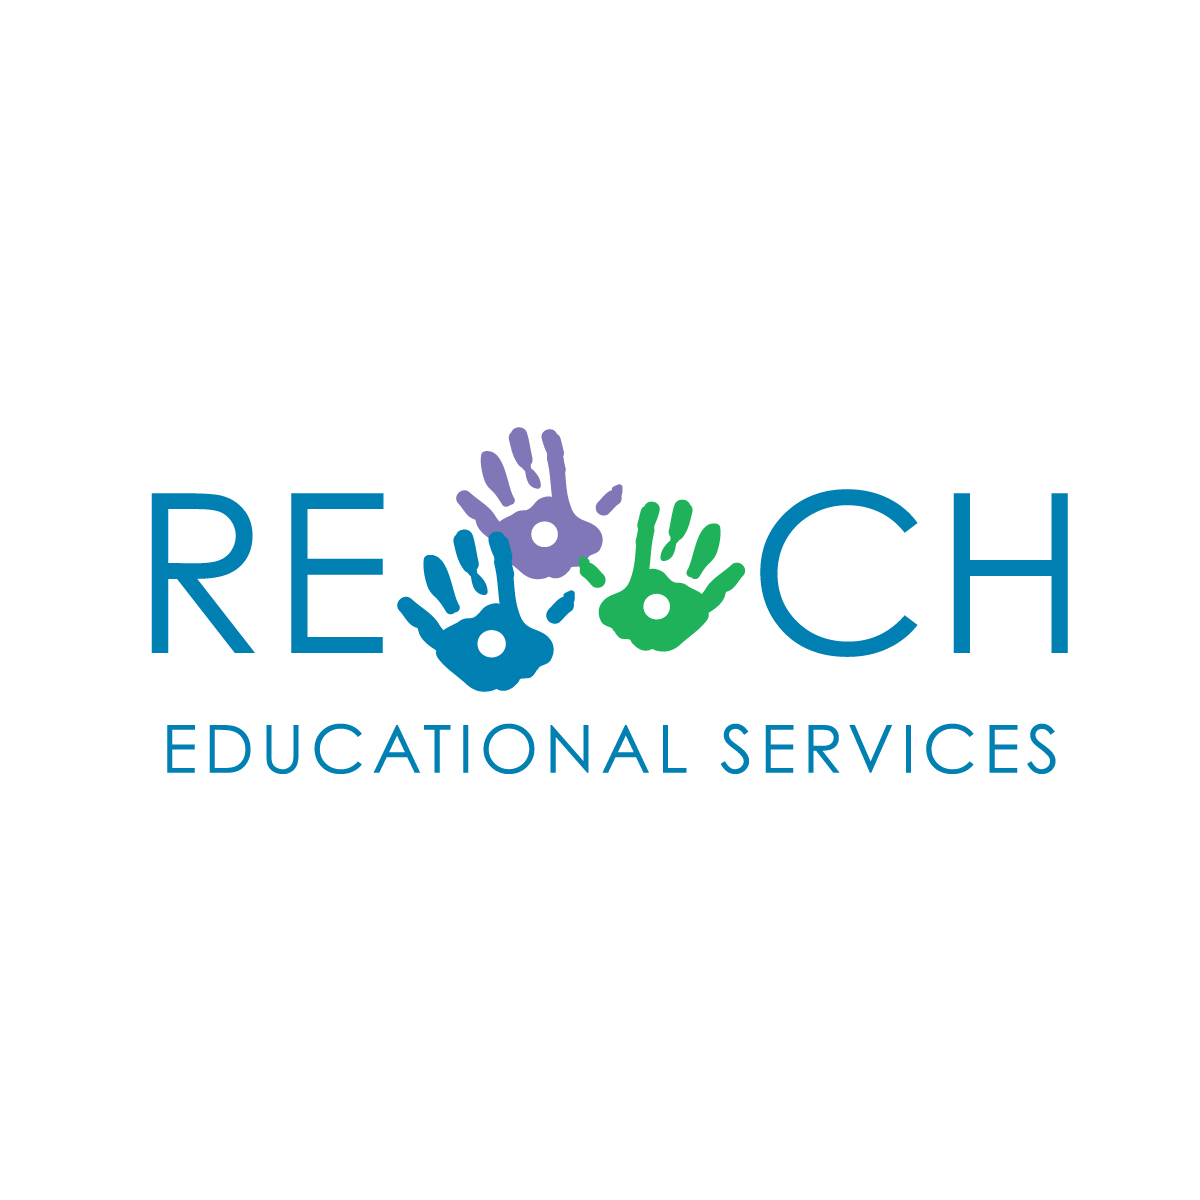 Reach organization typographic logo